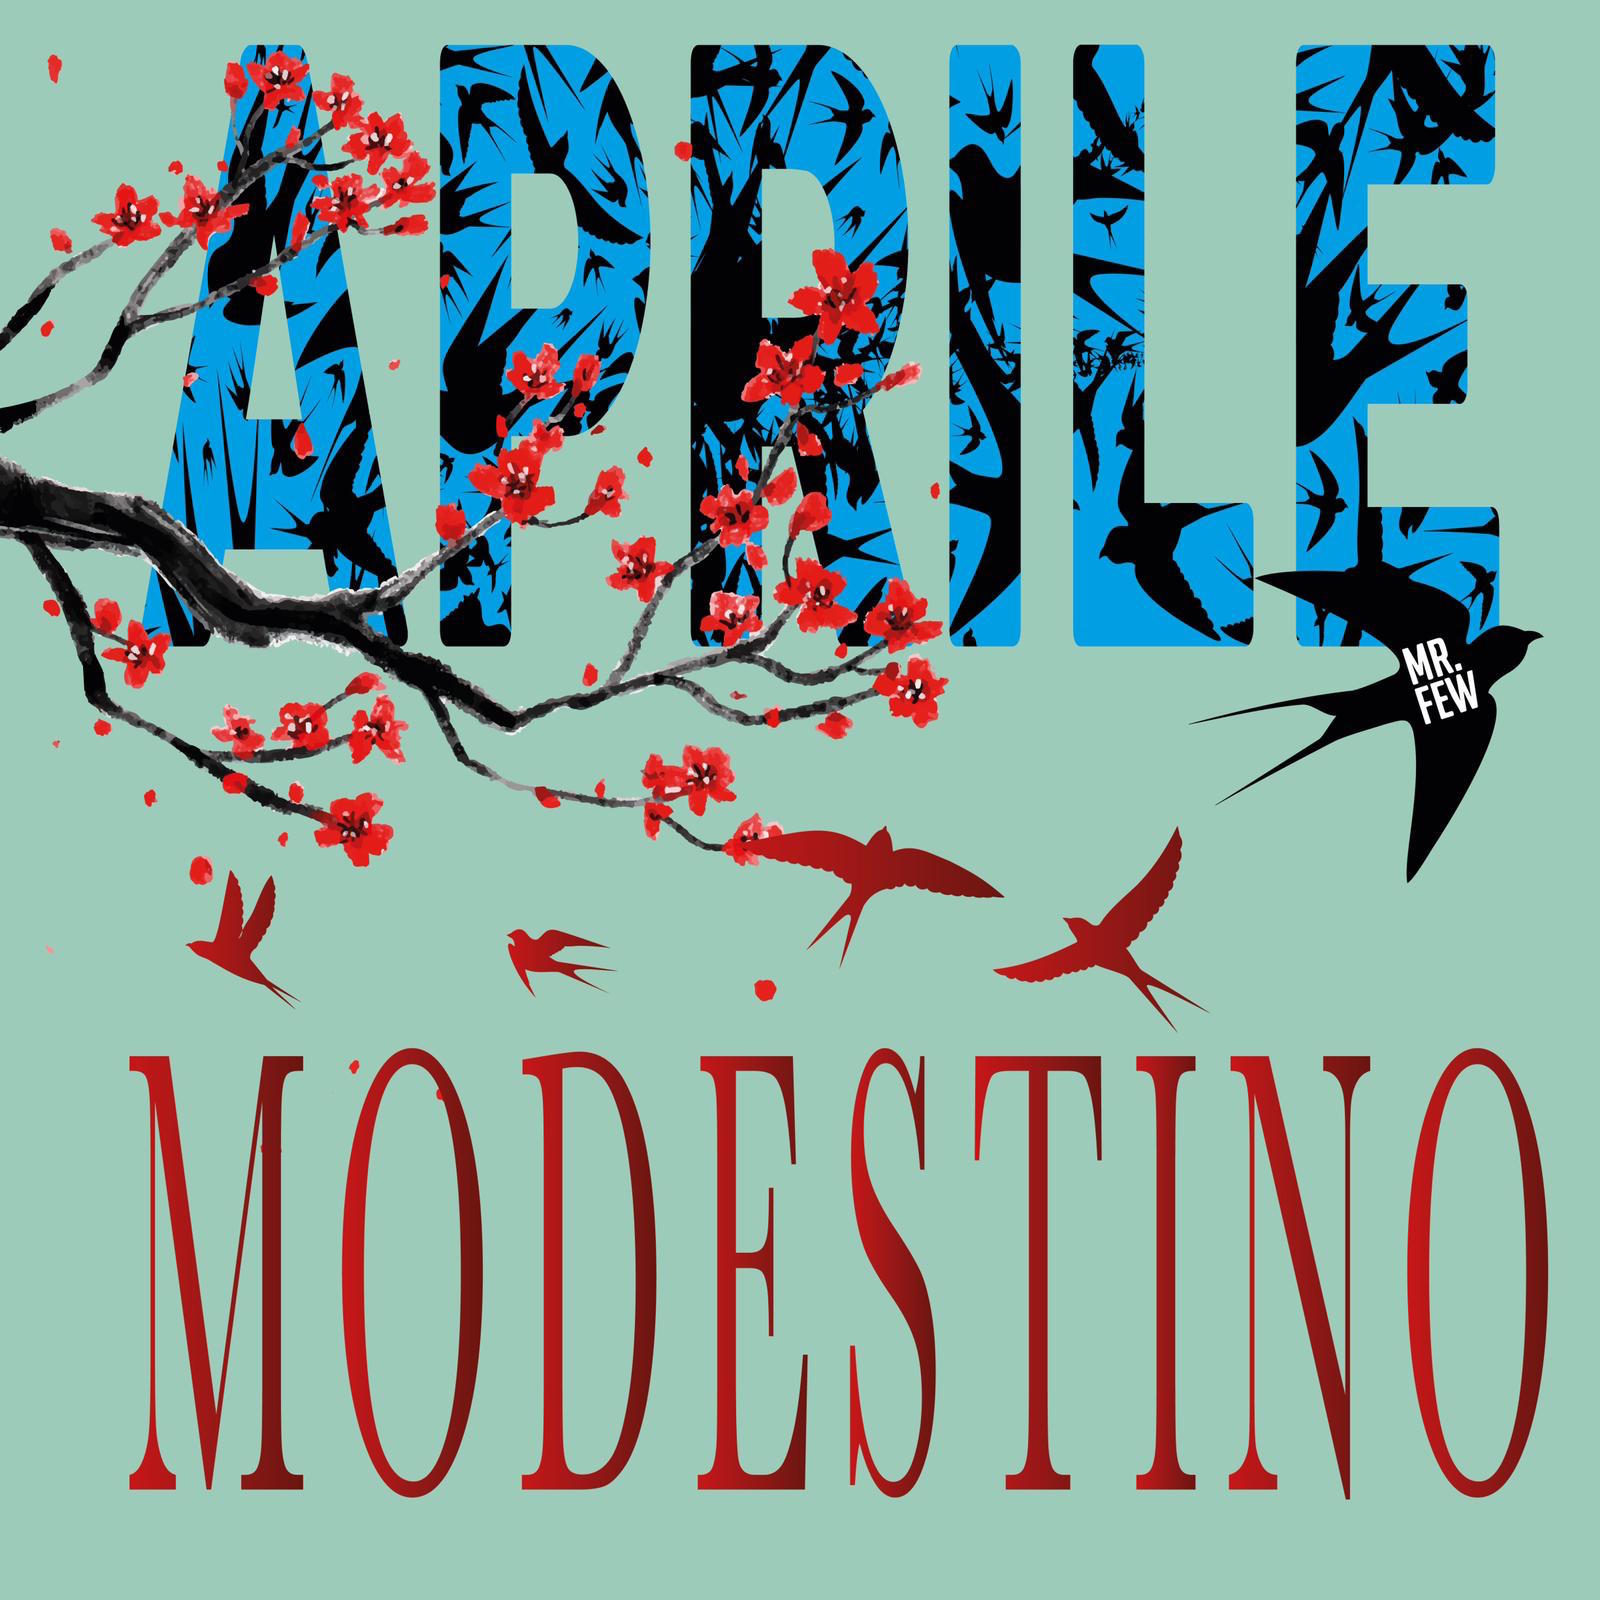 Modestino all'esordio con il singolo Aprile